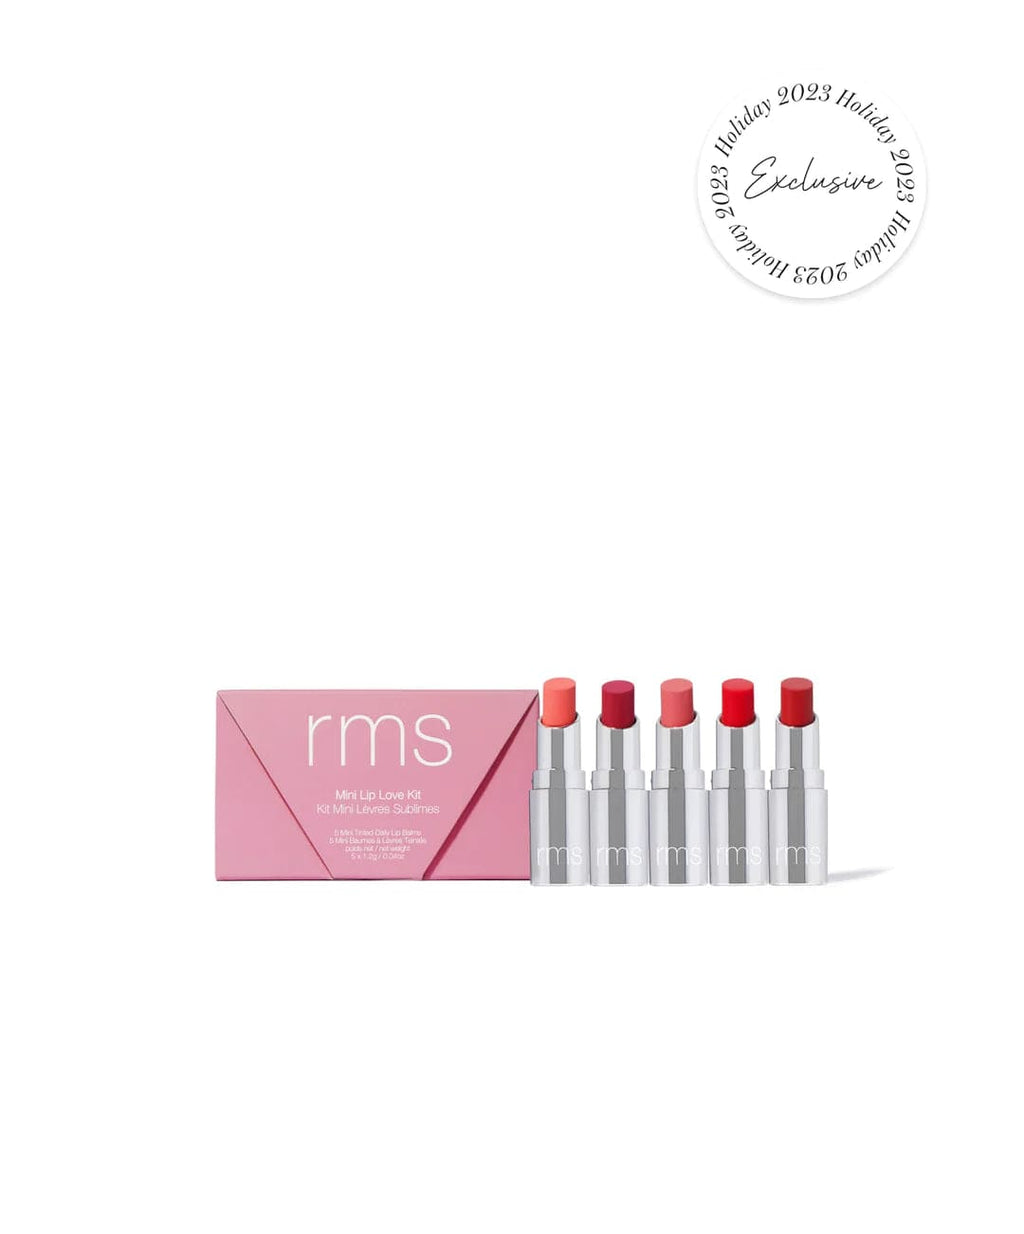 RMS - Mini lip love kit - The Natural Beauty Club